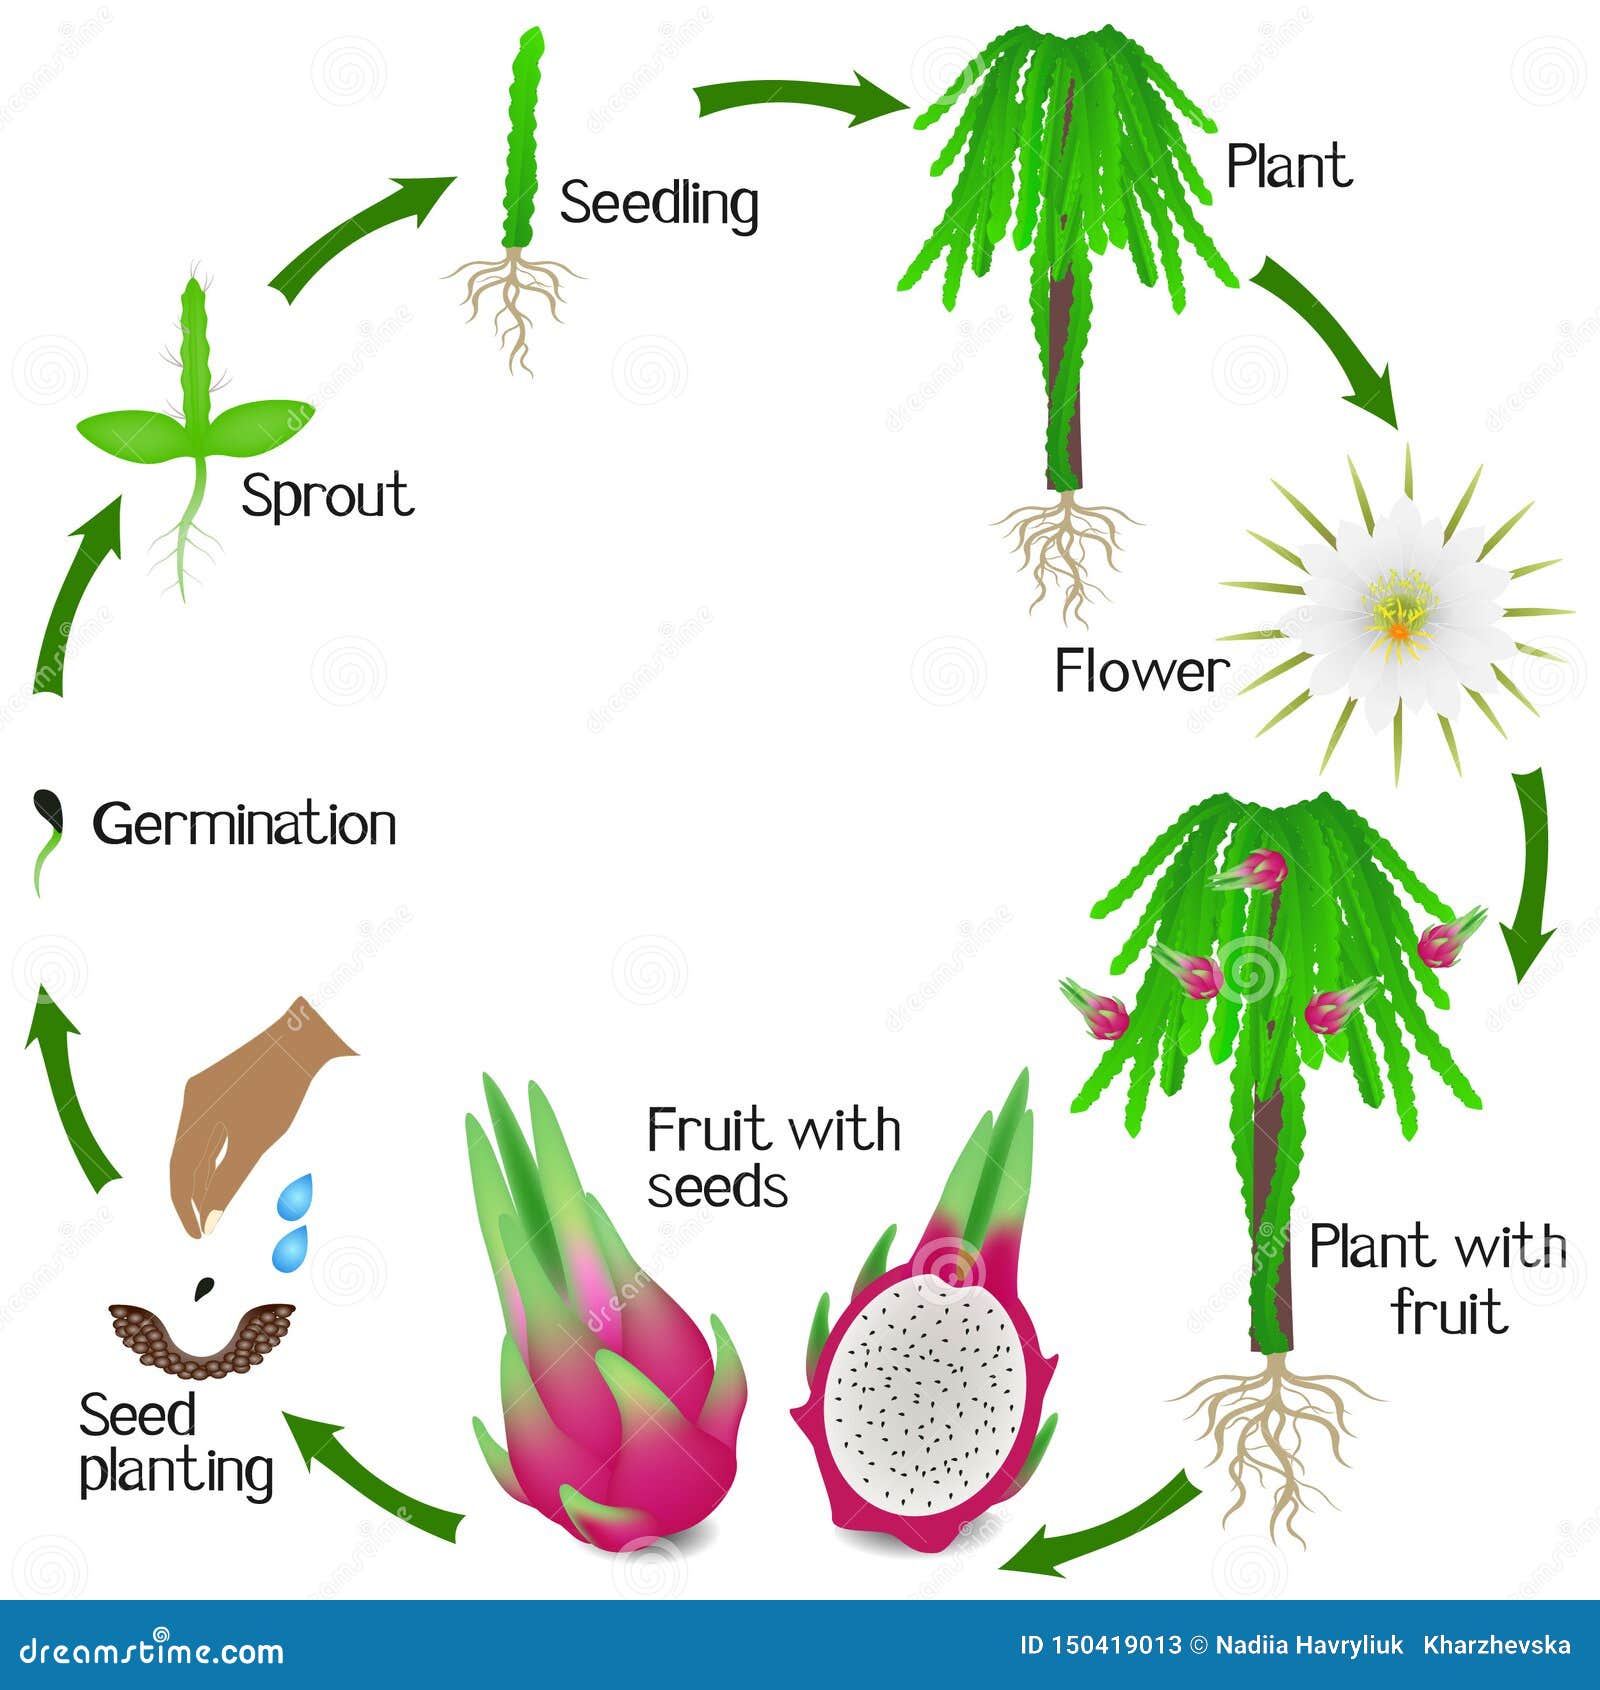 دورة حياة شجرة فاكهة التنين